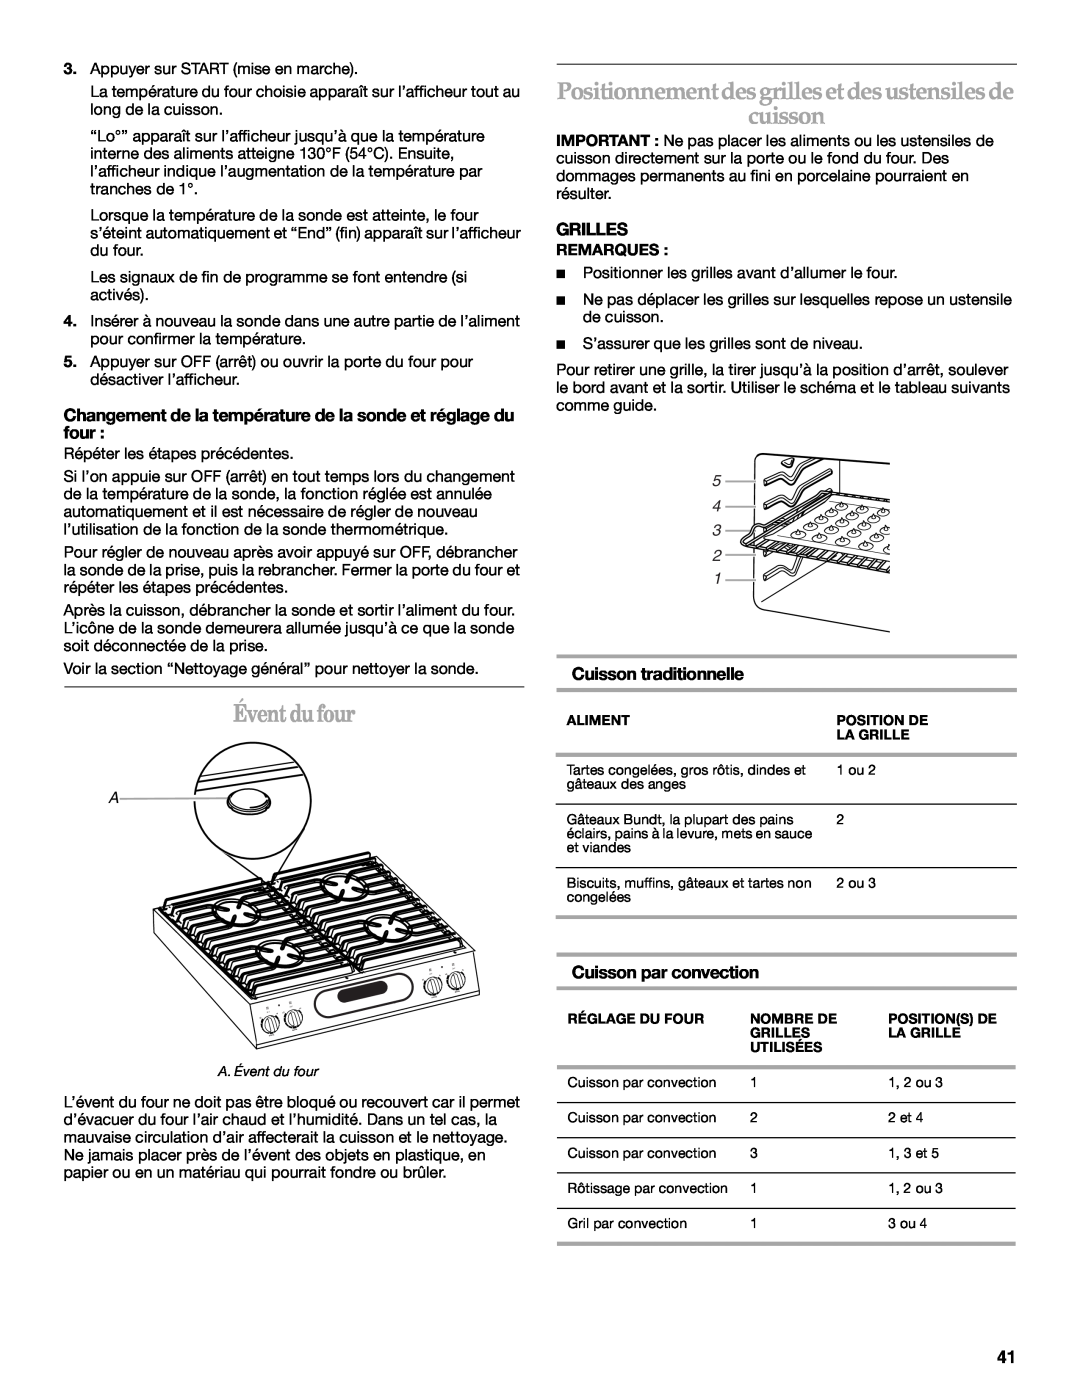 KitchenAid KGRI801 manual Éventdufour, Positionnementdesgrillesetdesustensilesde cuisson, Grilles, Cuisson traditionnelle 